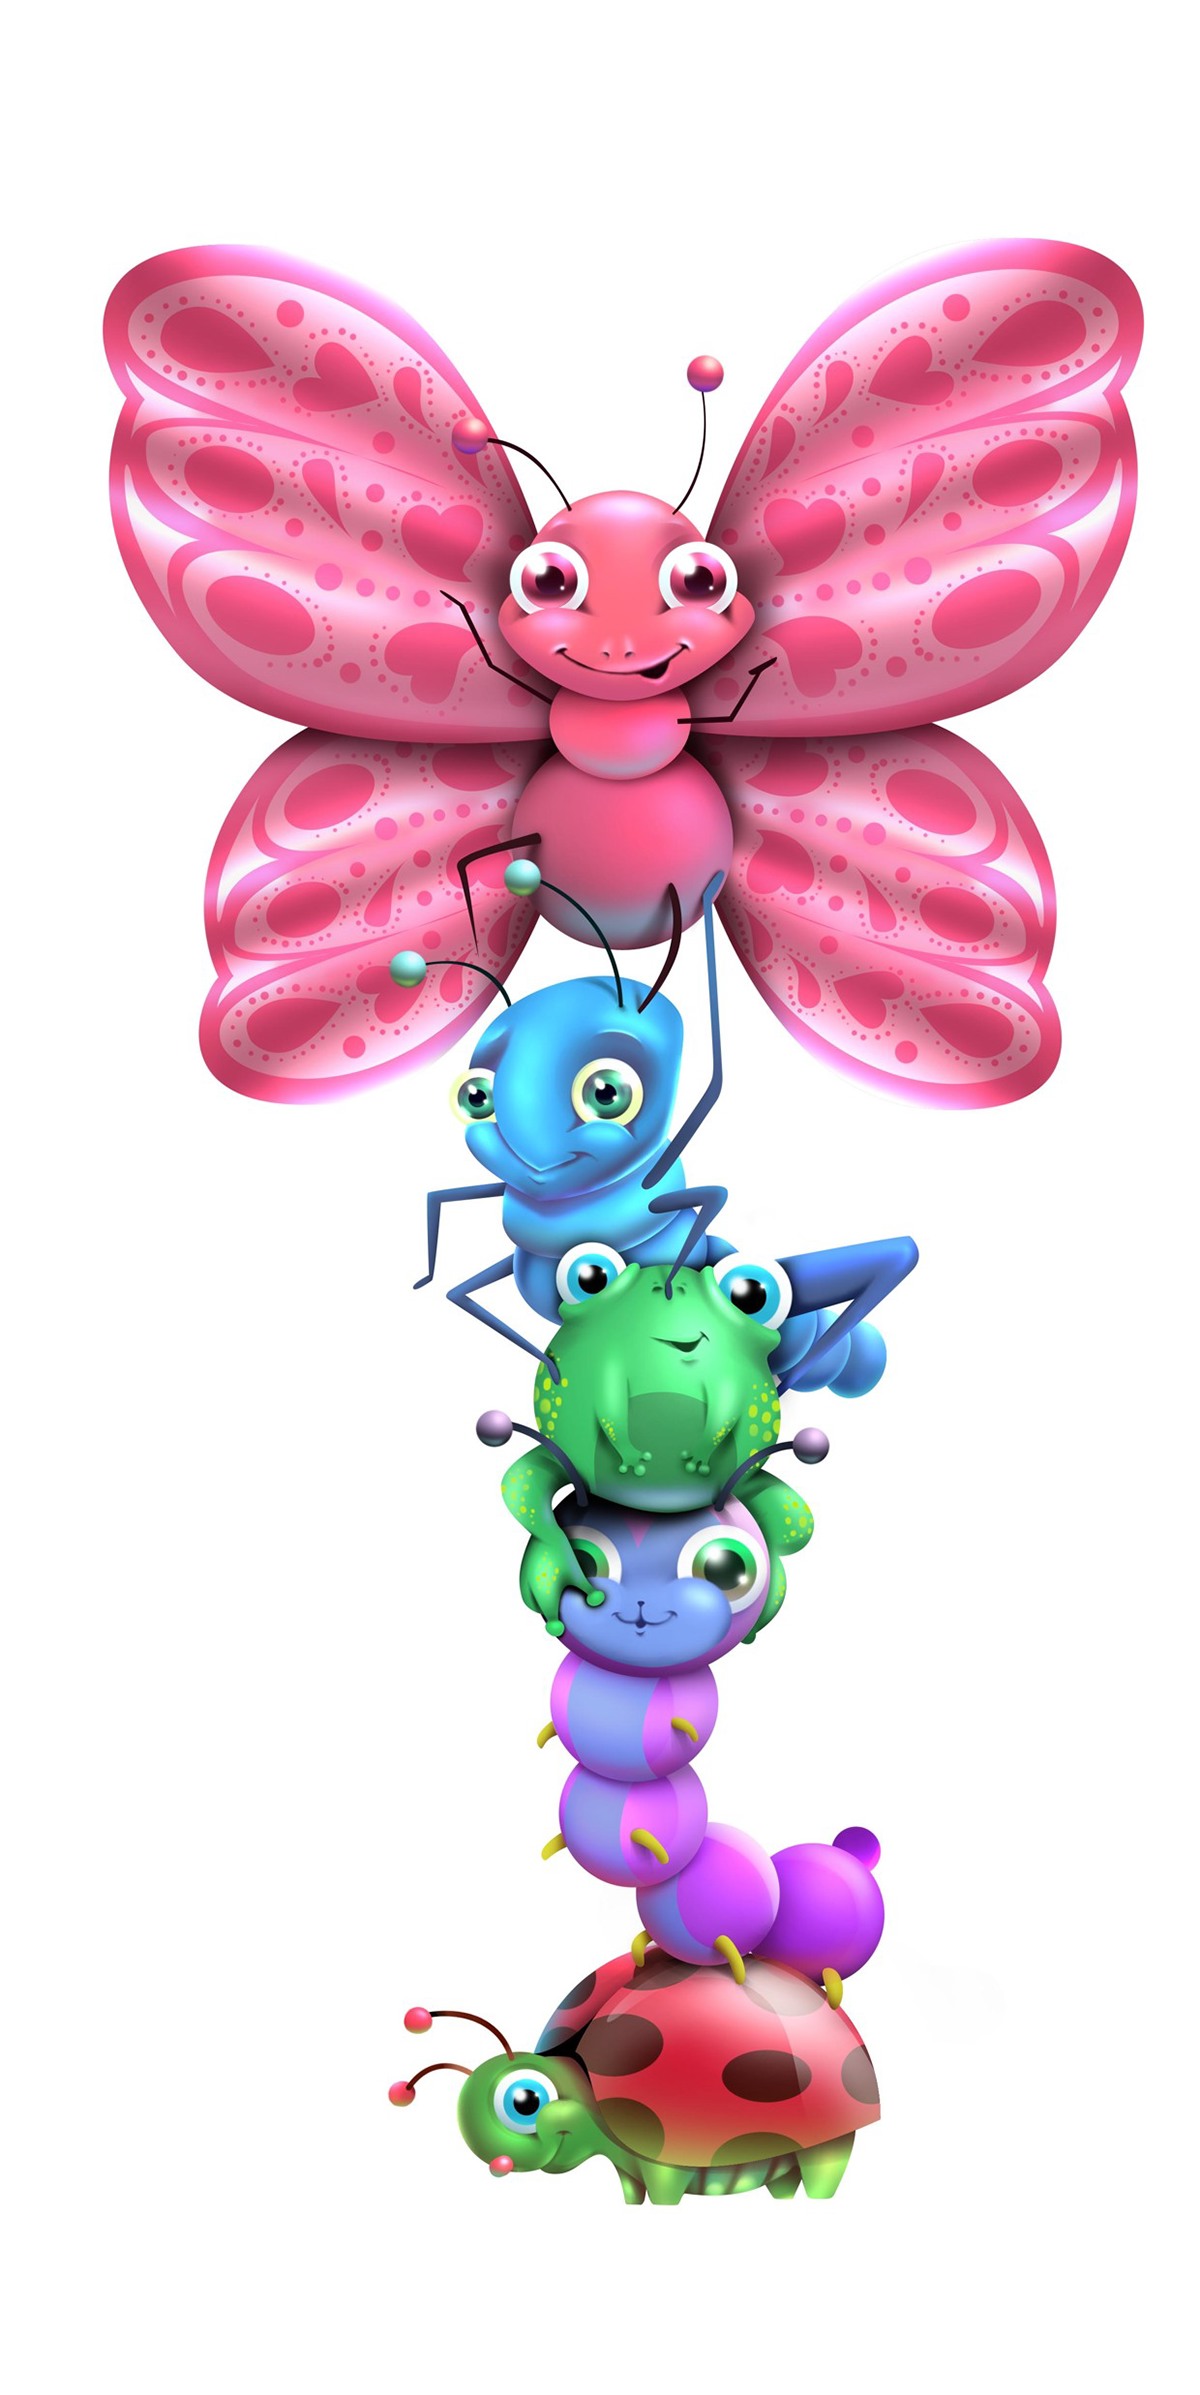 régua personagens insetos kids Crianças Brinquedo ilustração de adesivo adesivo